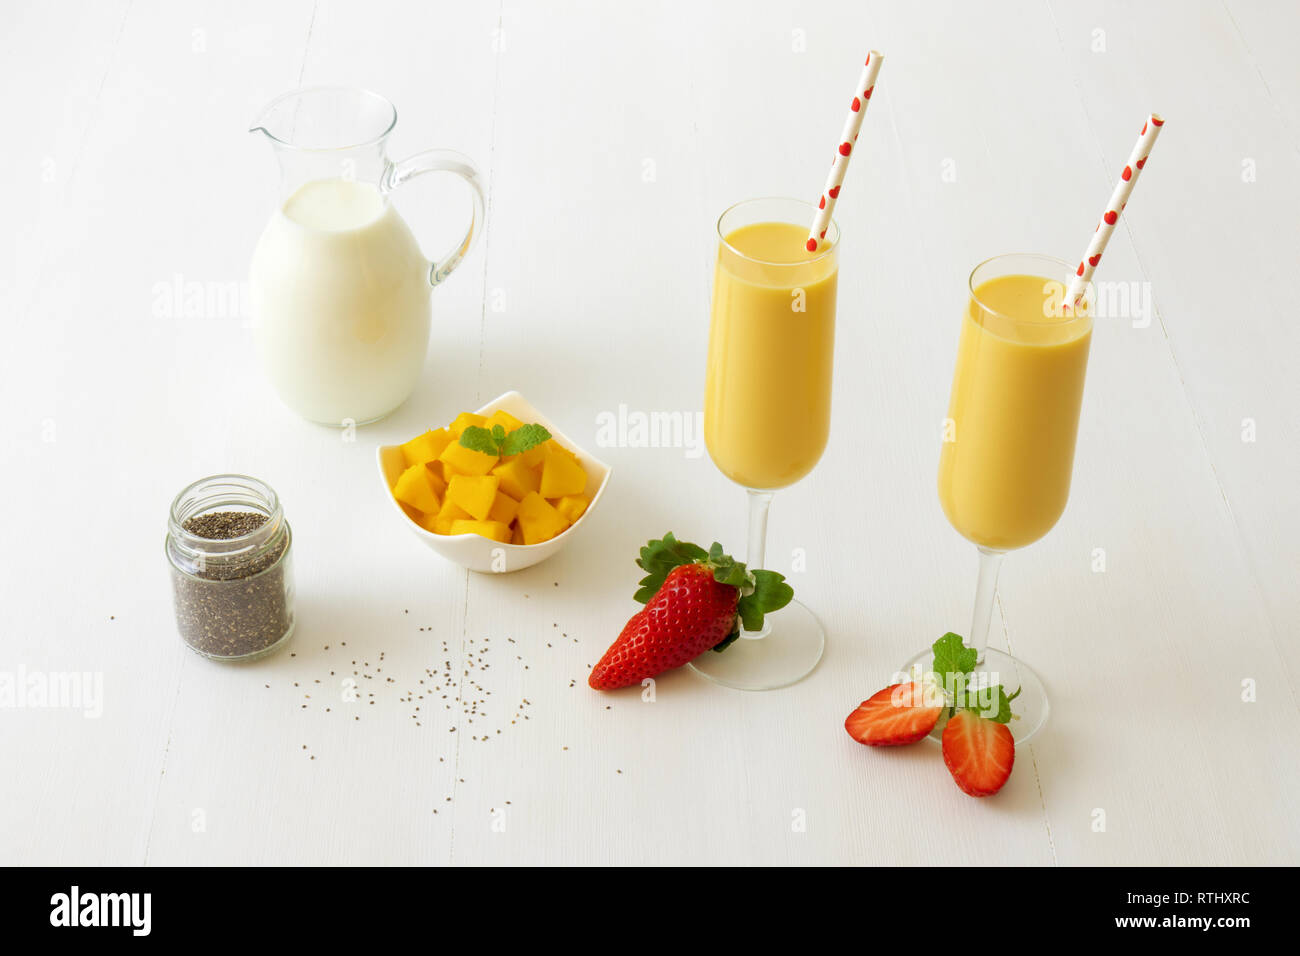 2 Gläser frische Mango Smoothie oder Mango Milchshake mit Milch in Glas  Krug, Chia Samen, Mangostückchen in Porzellan Schüssel und nur wenige echte  Frische Stra Stockfotografie - Alamy